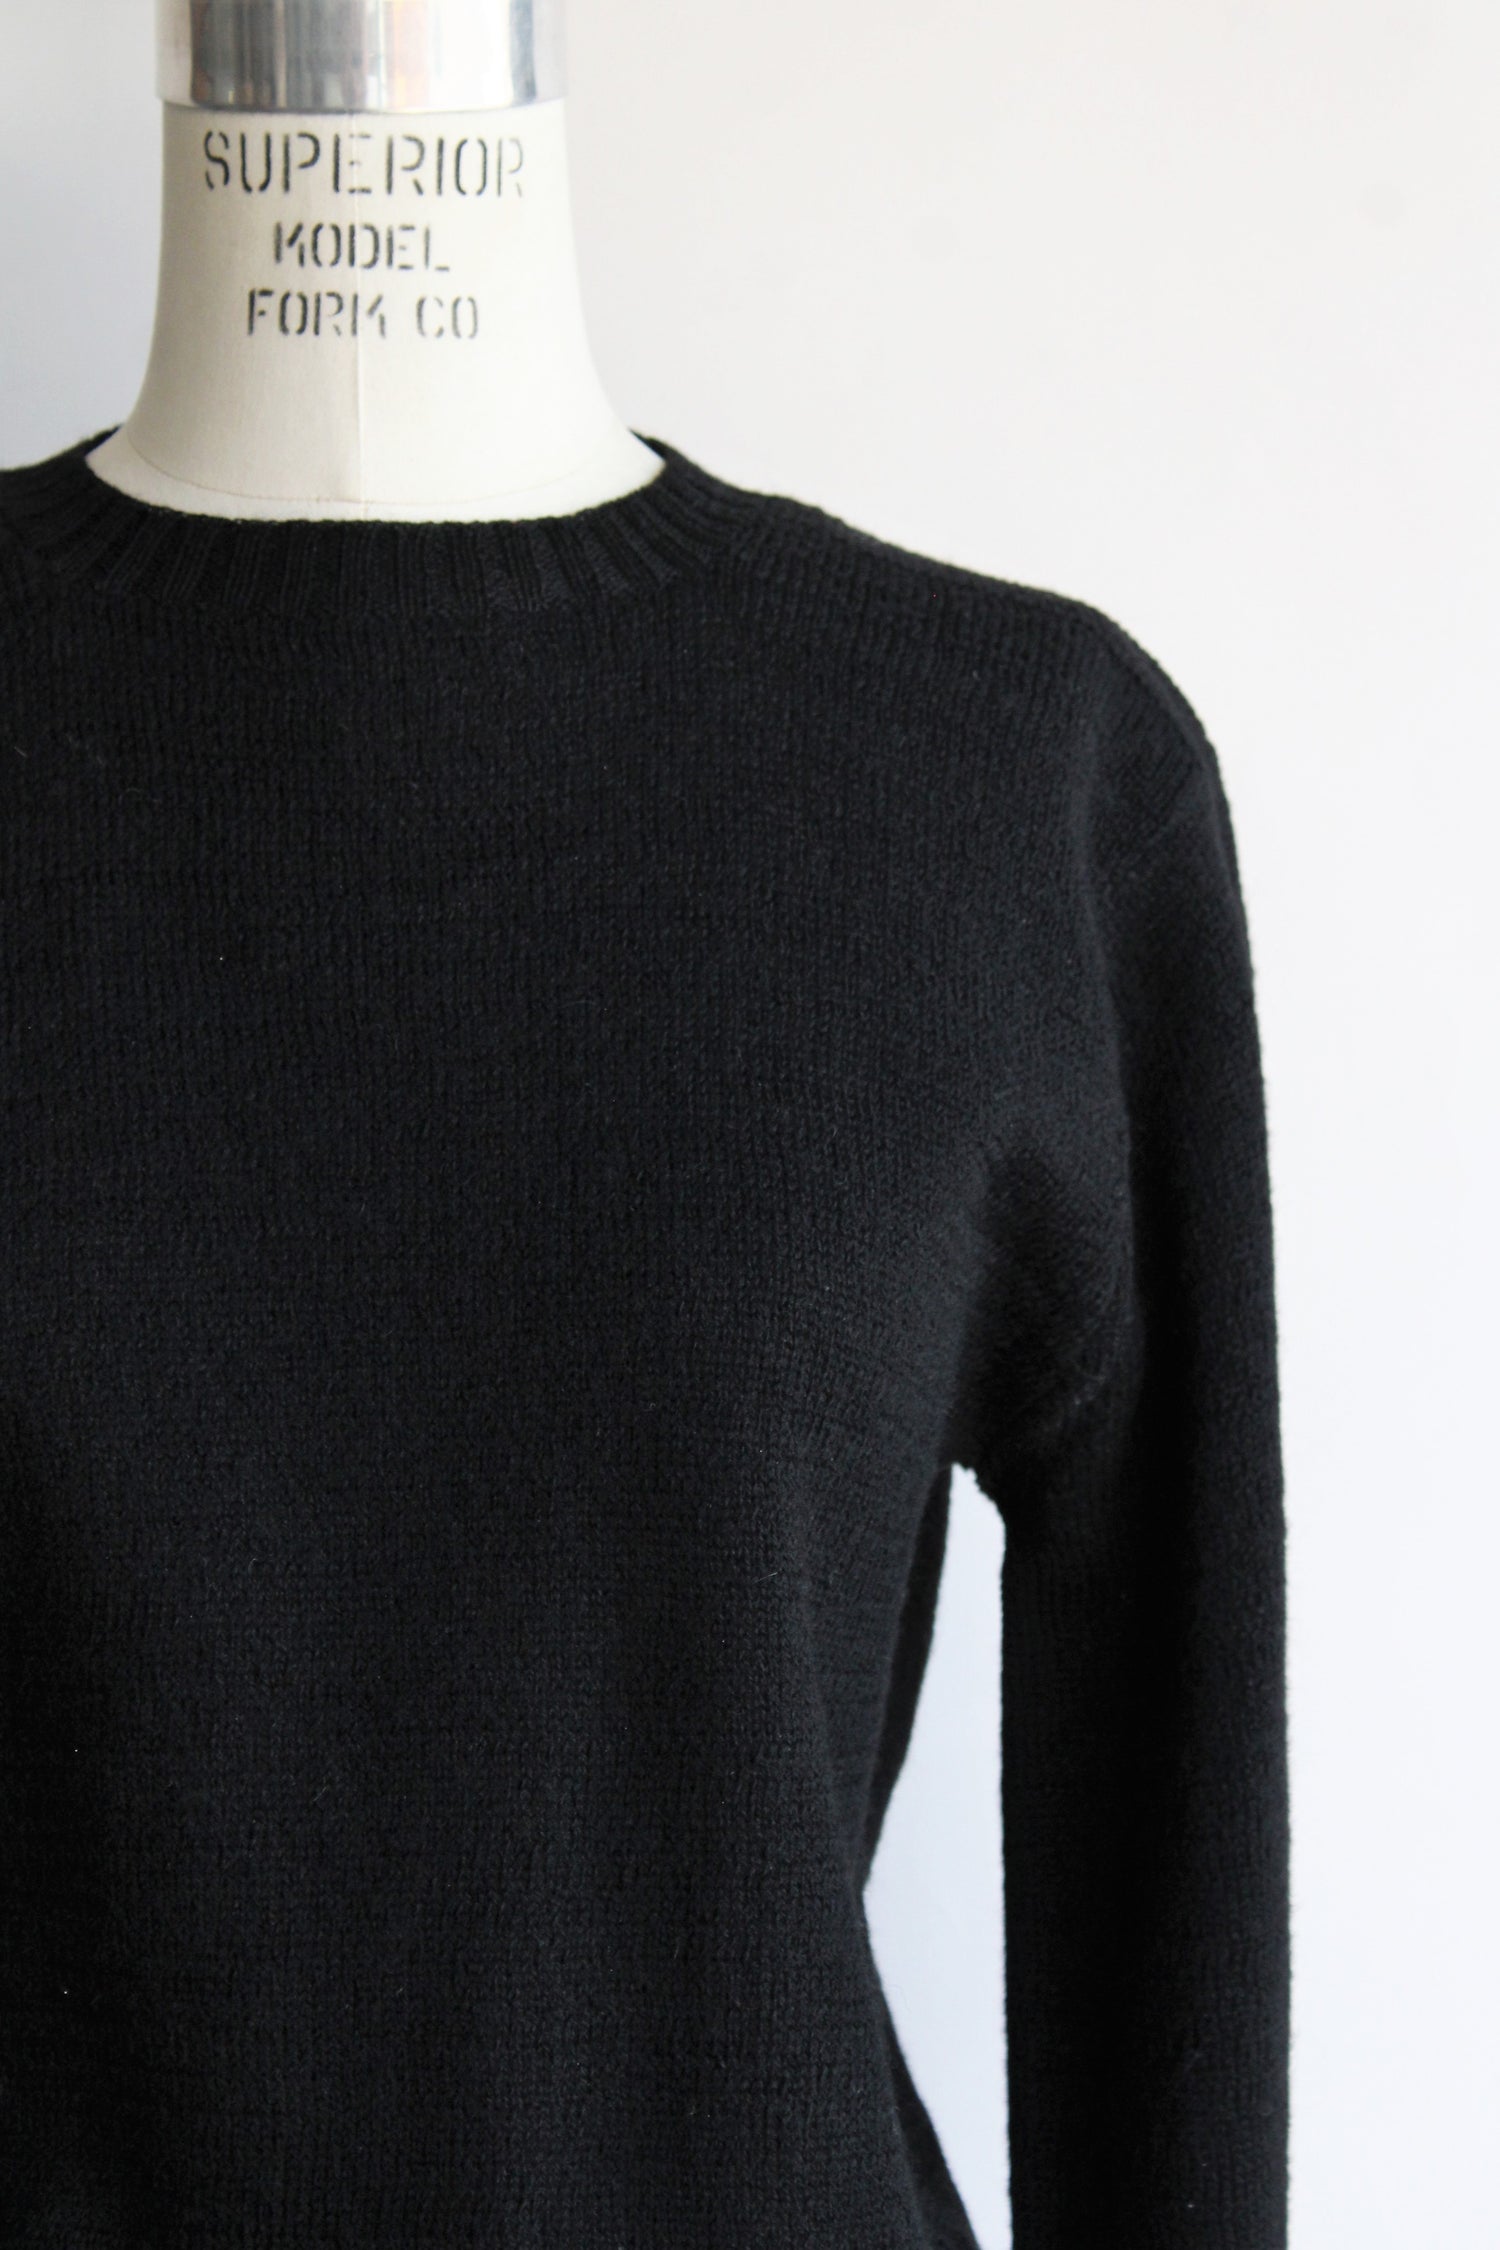 Vintage 1950s Alberic Original Wool Sweater